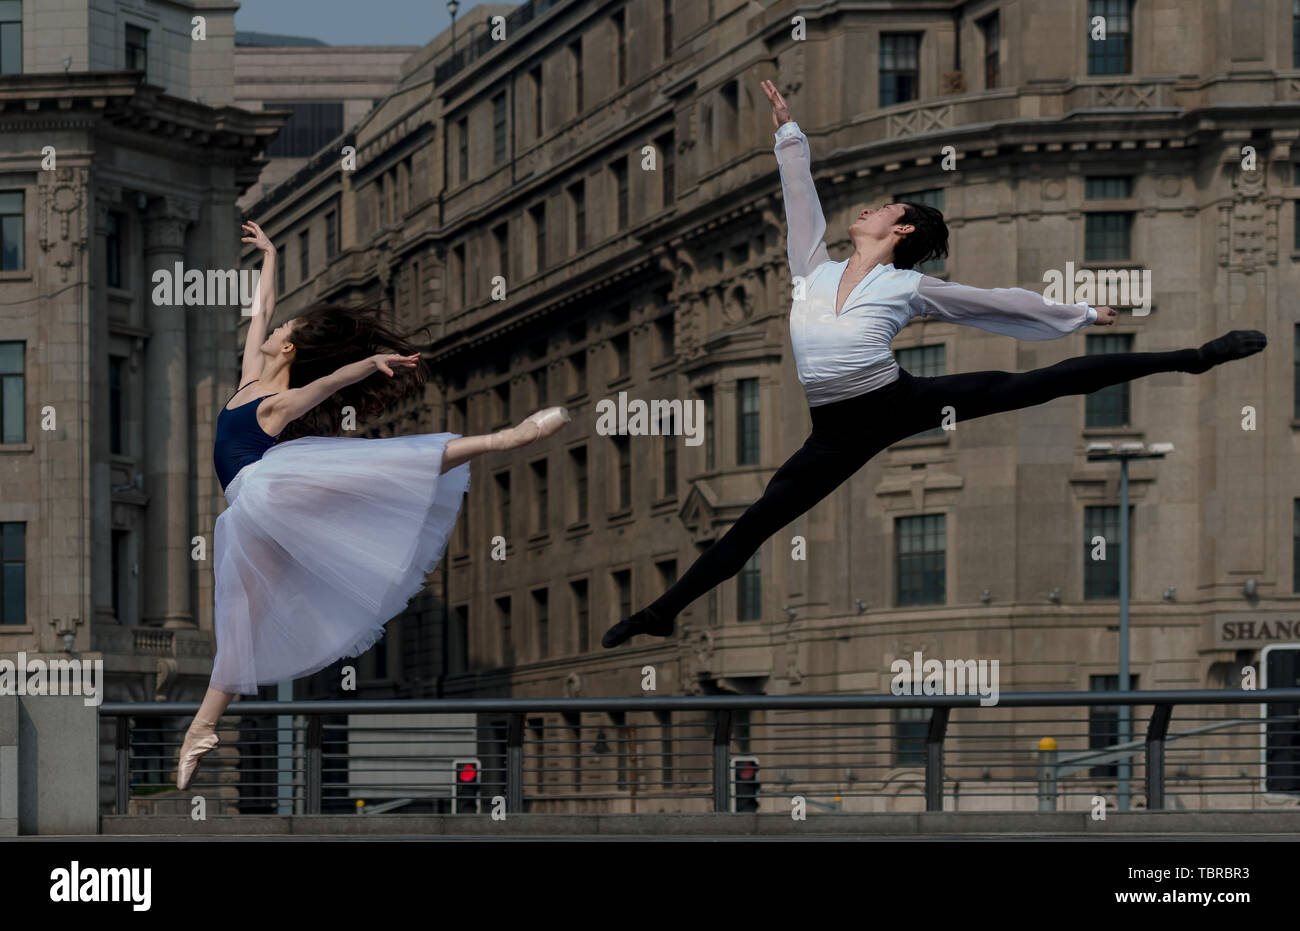 Bund zeigen, Ballett. Foto von Shanghai Pudong. Stockfoto